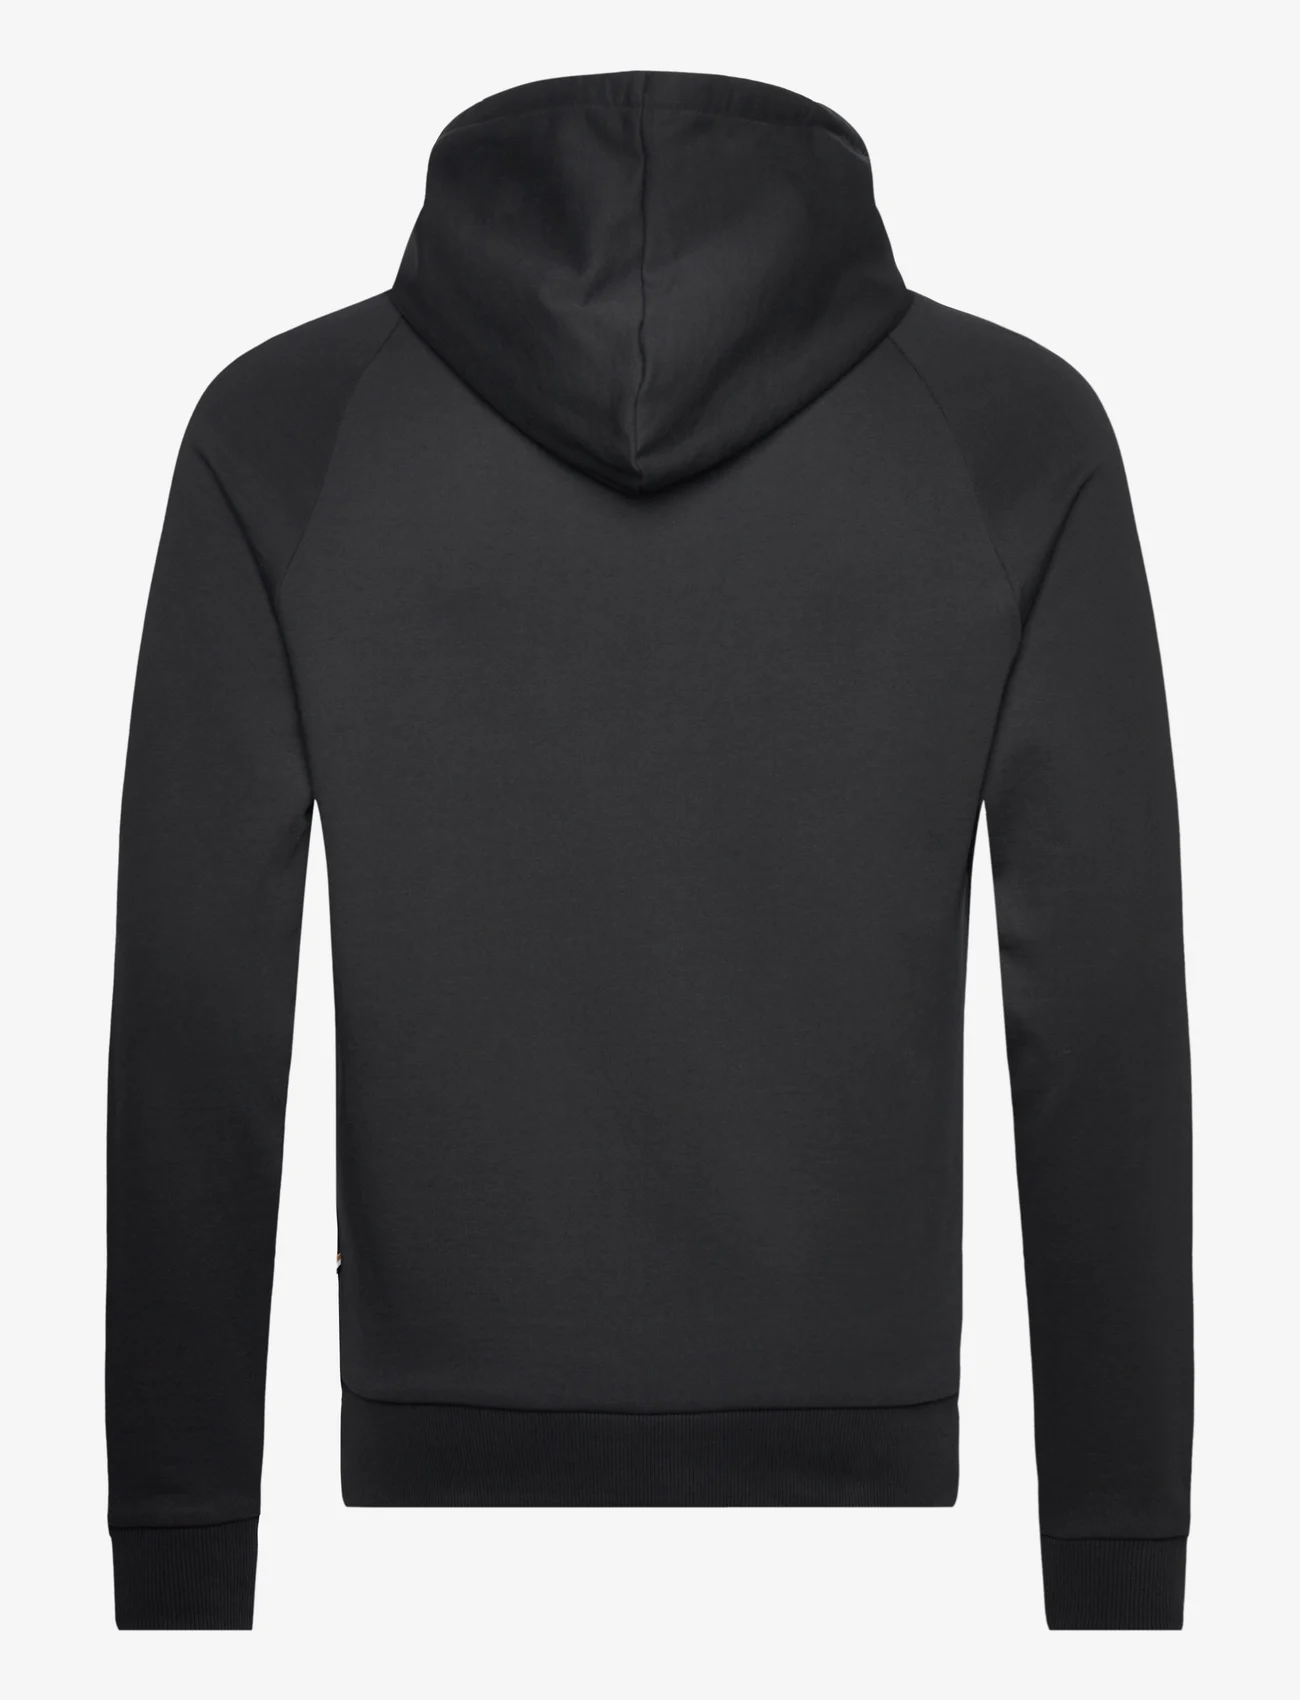 BOSS - Fashion Sweatshirt H - black - 1